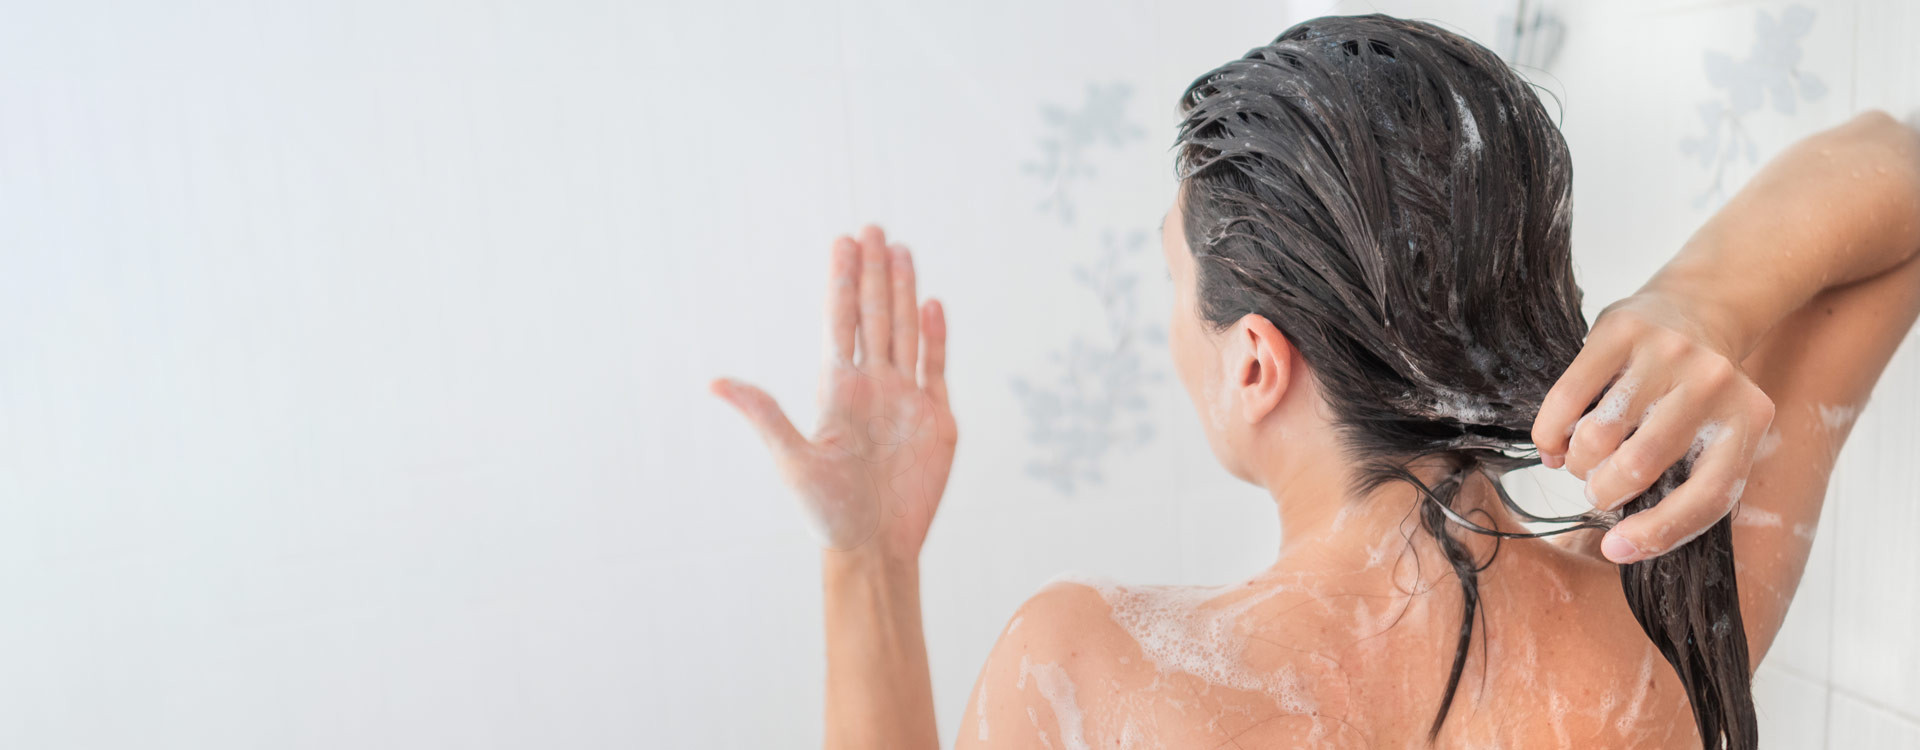 woman washing hair looking at hair fall on hand